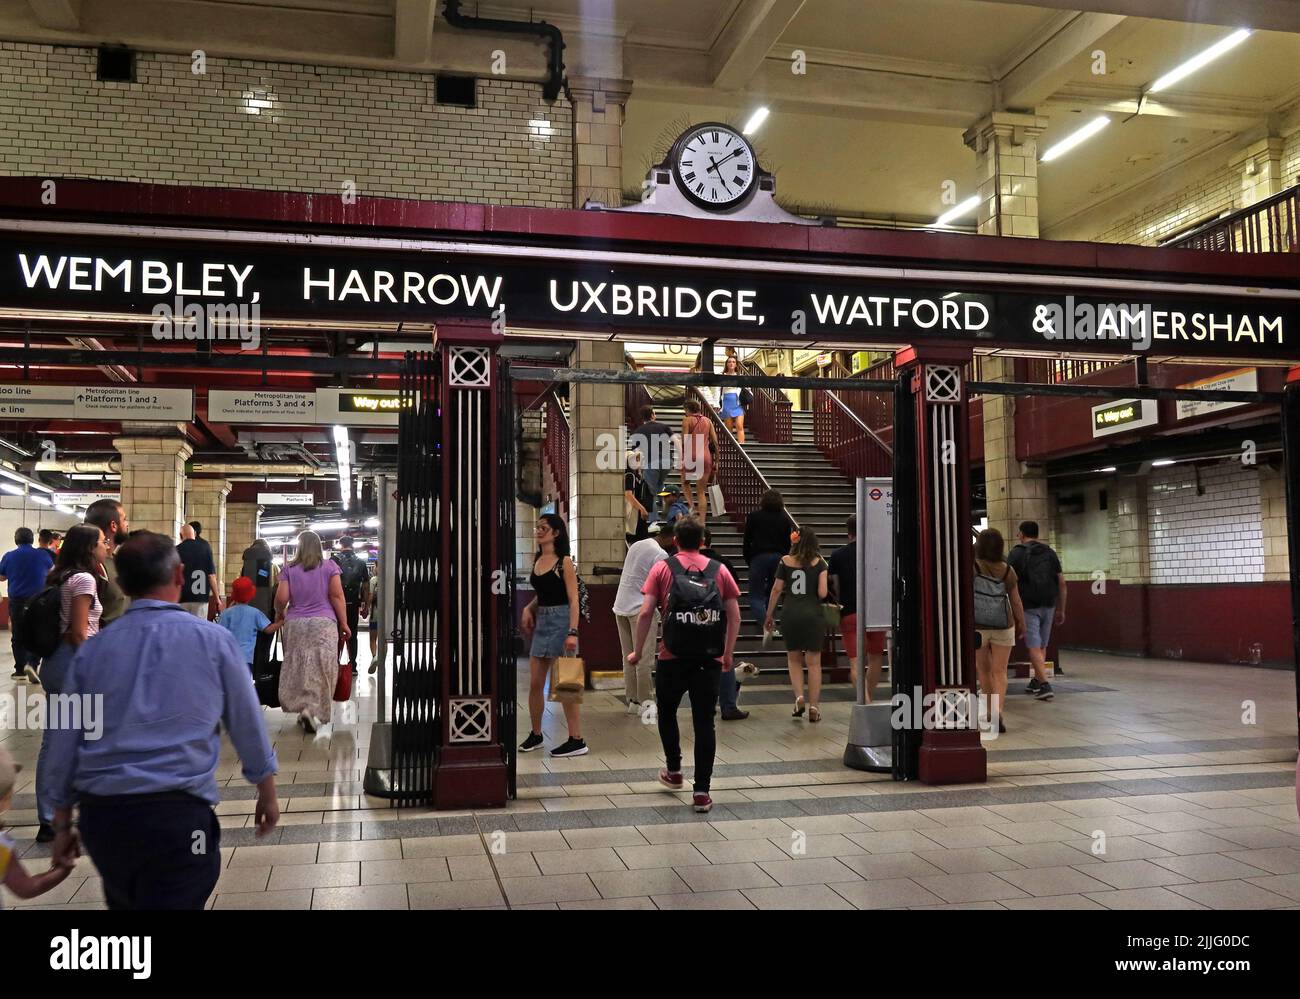 Geschäftiger viktorianischer Eingang zur U-Bahn-Station Baker Street Kreuzung, Linien nach Wembley, Harrow, Uxbridge, Watford, Amersham - London, England, Großbritannien, NW1 Stockfoto